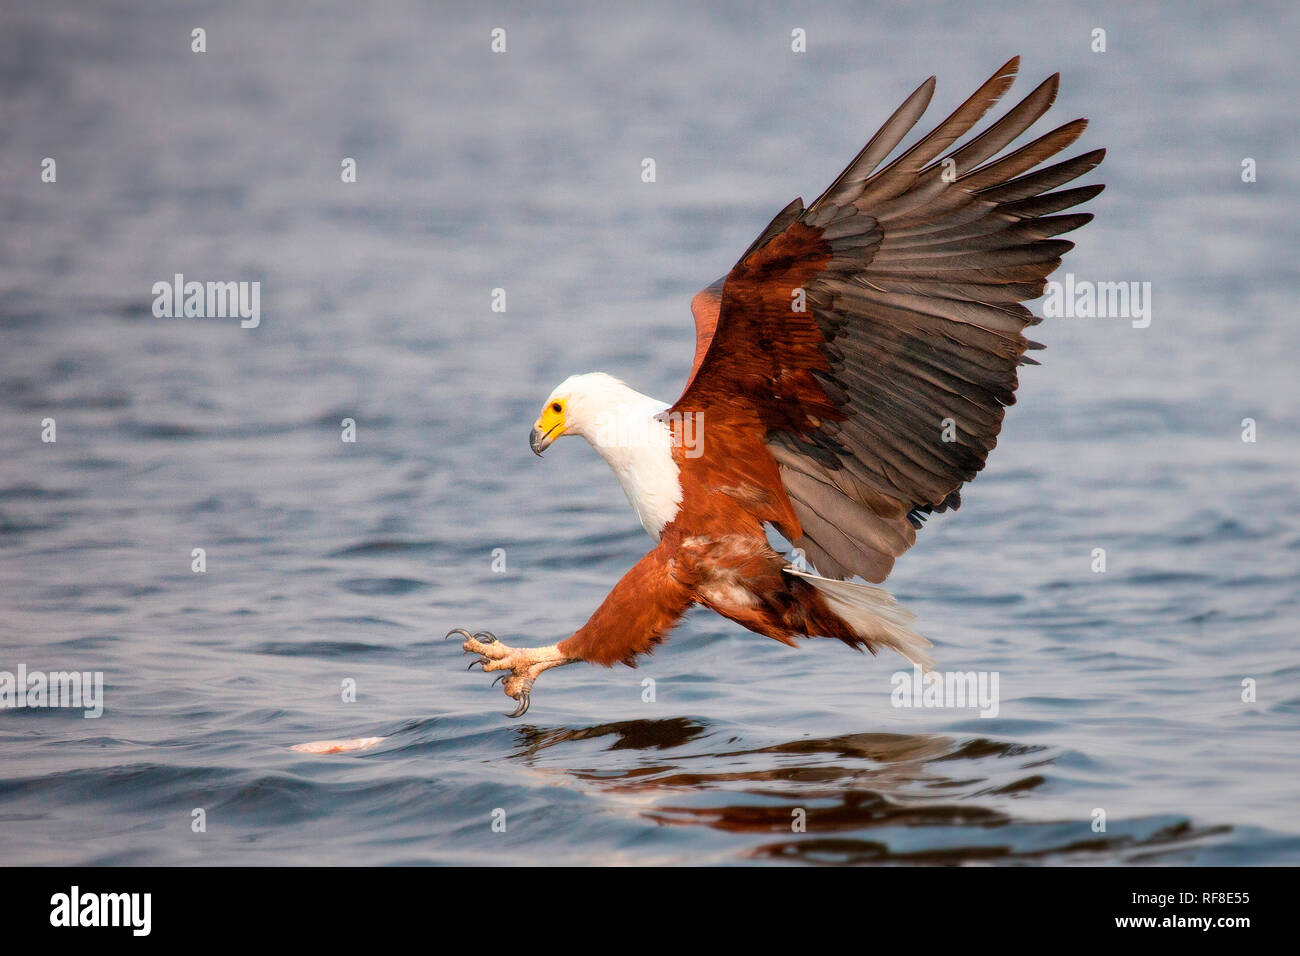 Un pesce africano eagle, Haliaeetus vocifer, vola verso acqua, artigli fuori circa per catturare un pesce, ali stese, guardando lontano Foto Stock